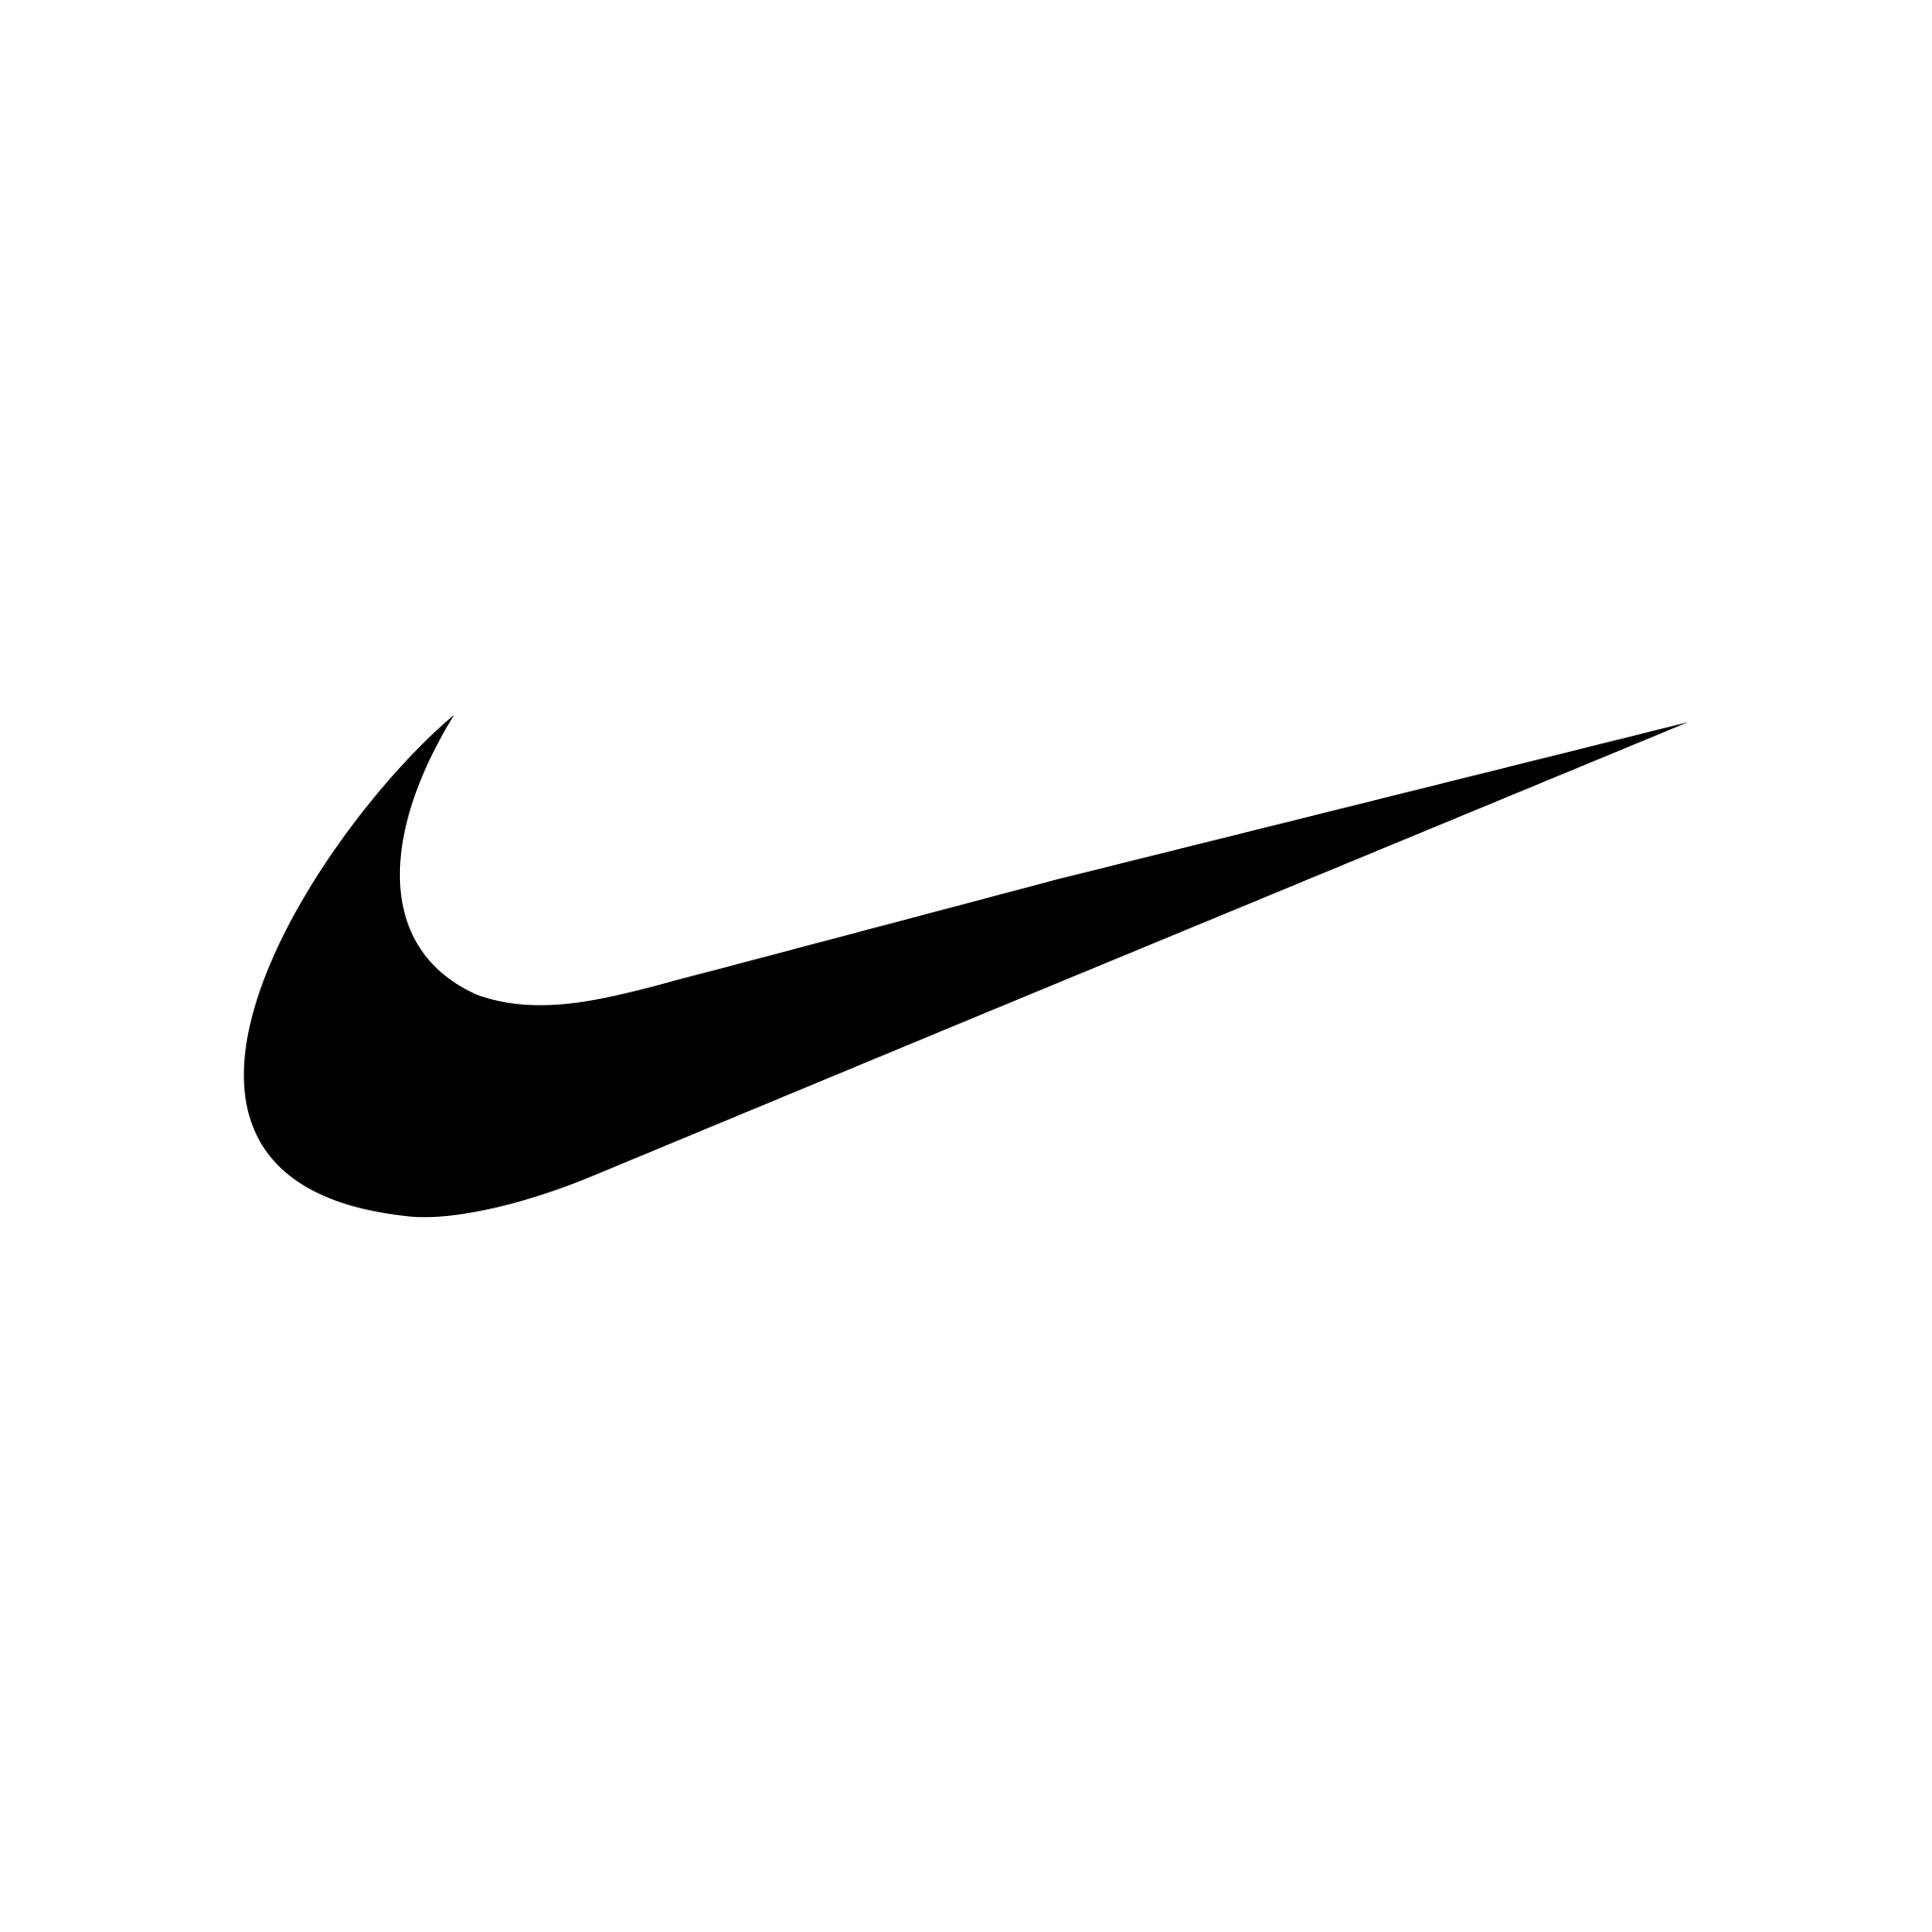 Logo de Nike SVG